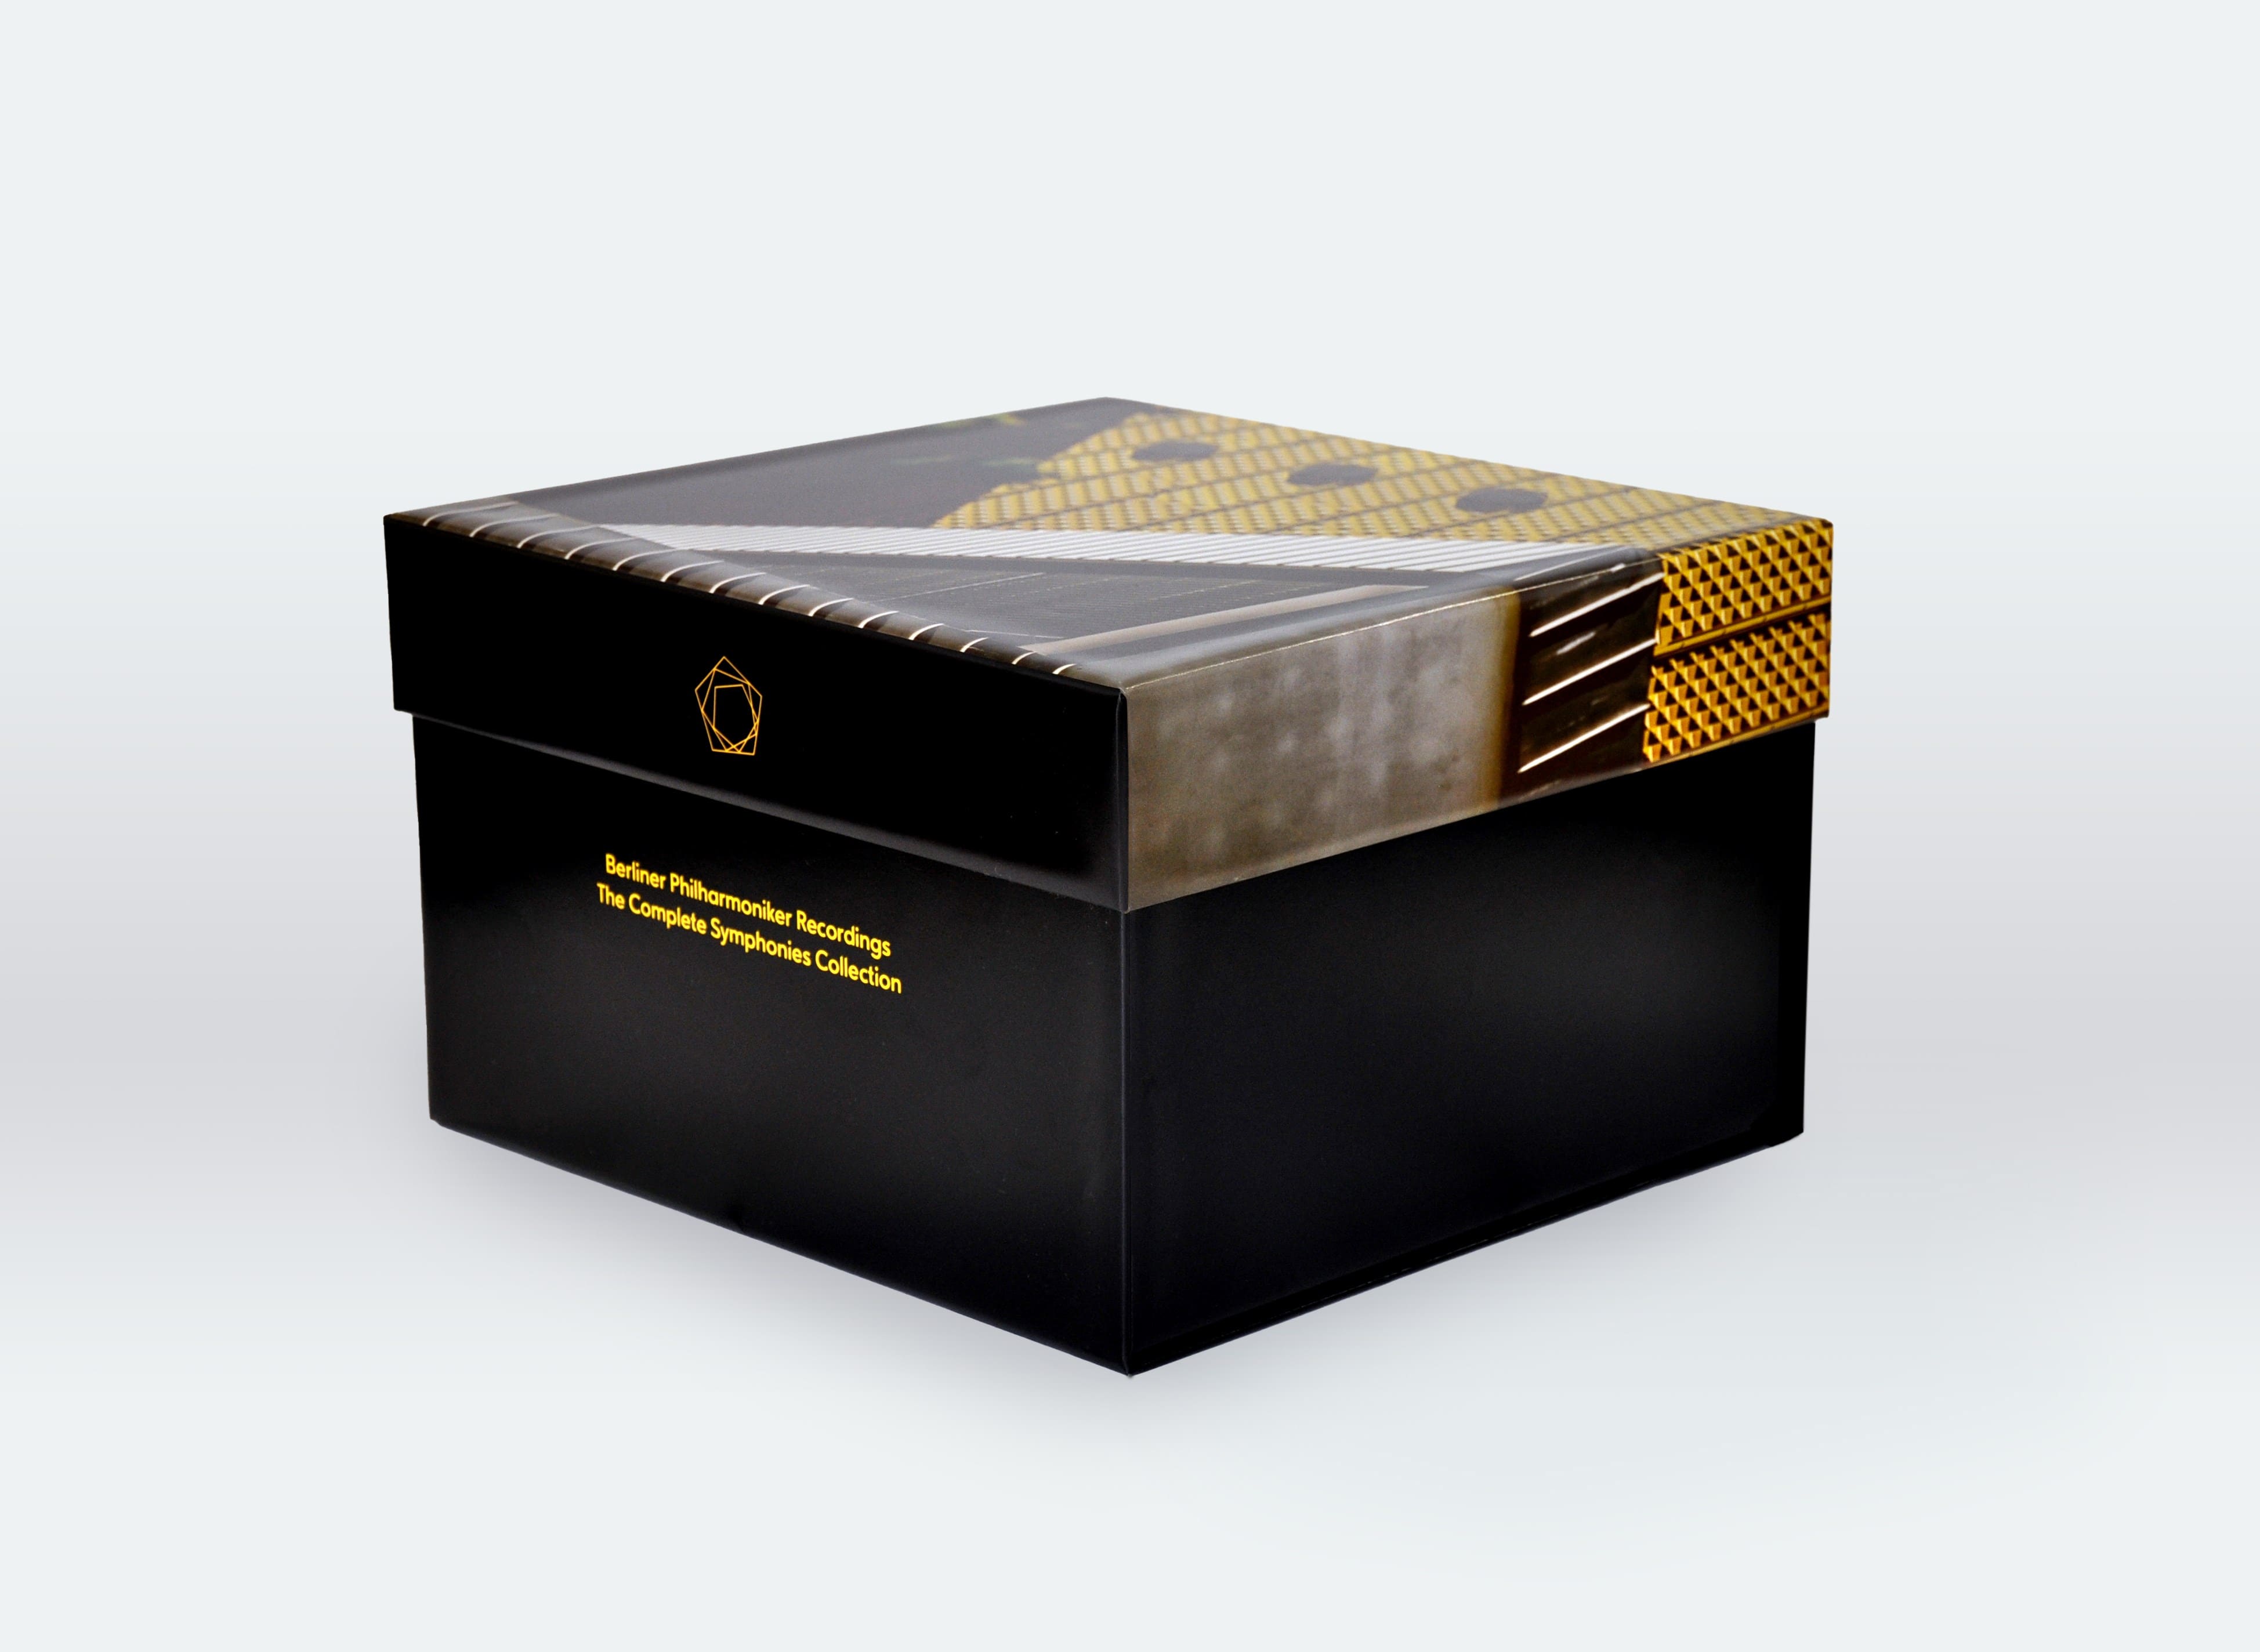 ベルリン・フィル・レコーディングス 交響曲全集 (Berliner Philharmoniker Recordings / The Complete Symphonies Collection) [38CD+15Blu-ray] [Import] [日本語帯・解説付]